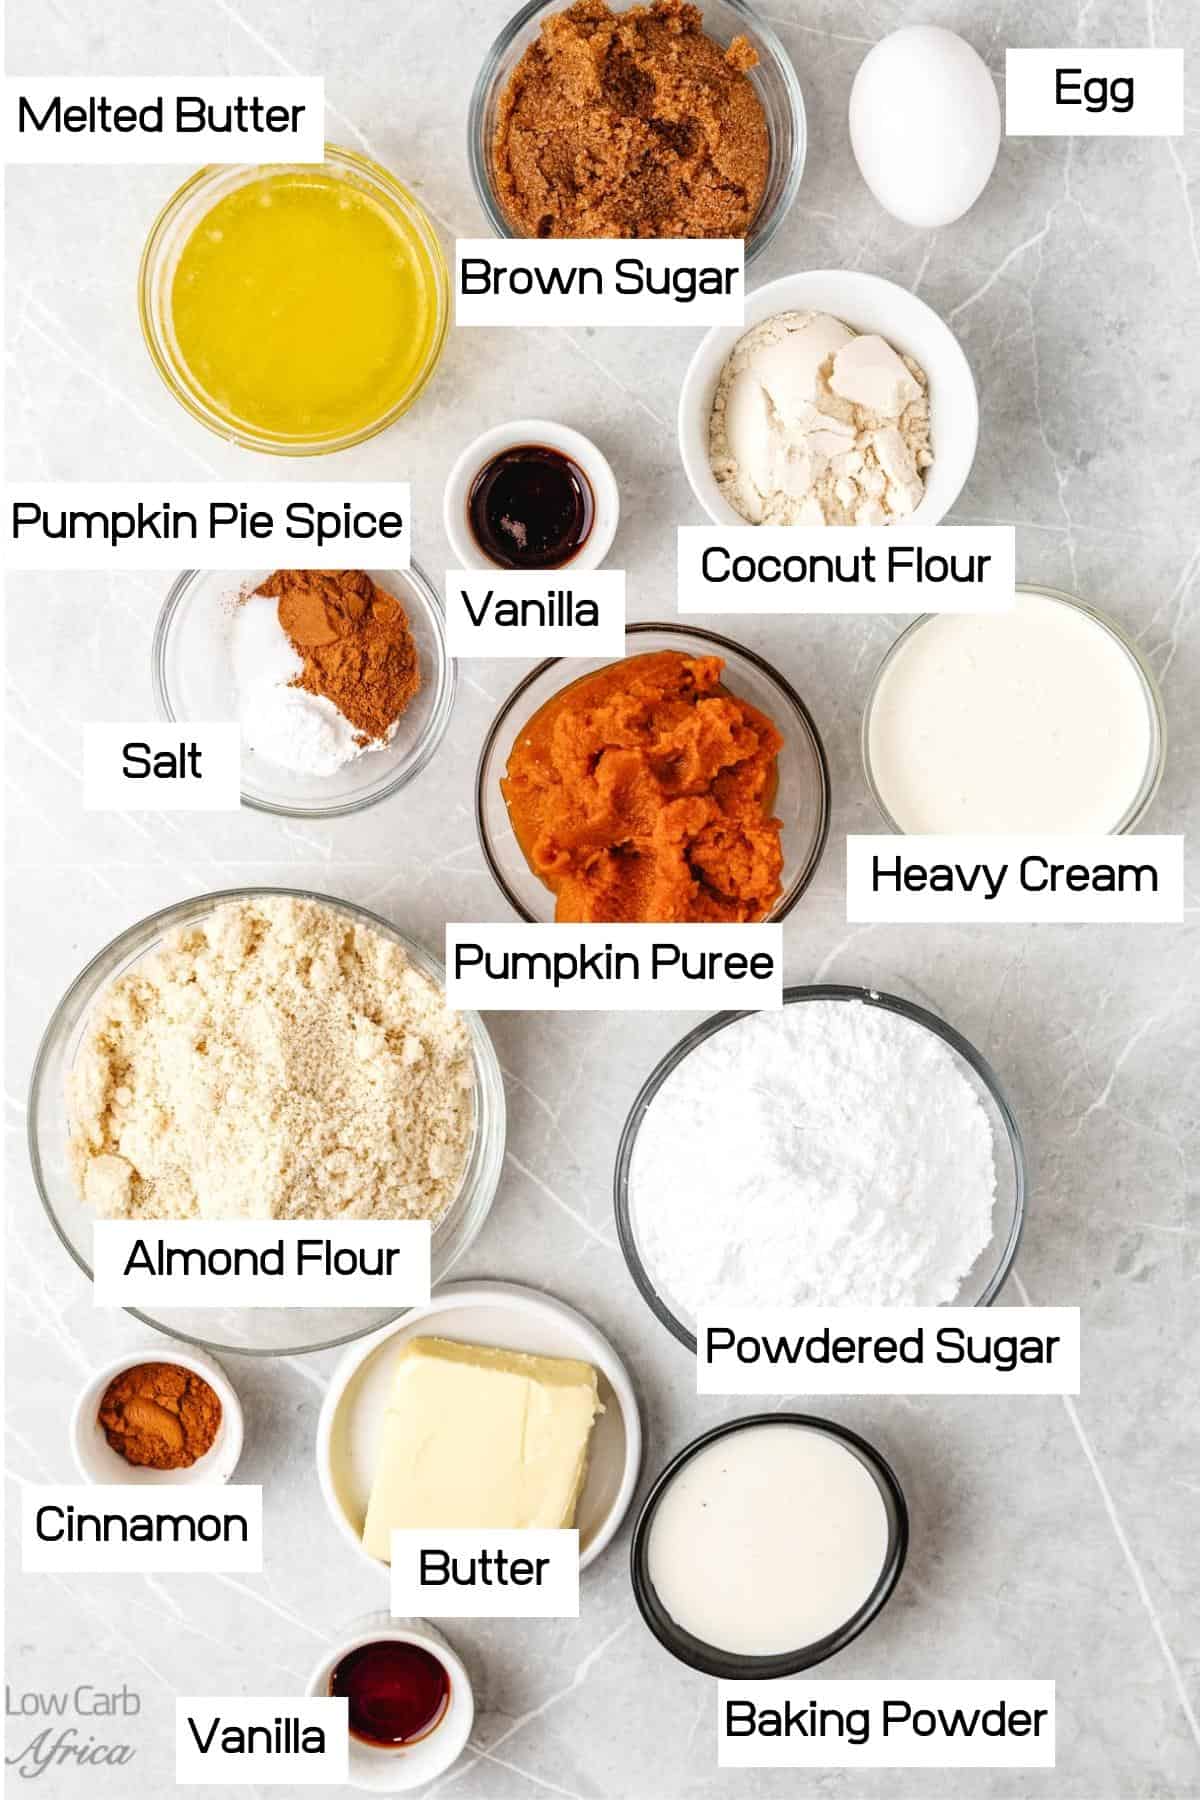 Coconut flour, almond flour and heavy cream